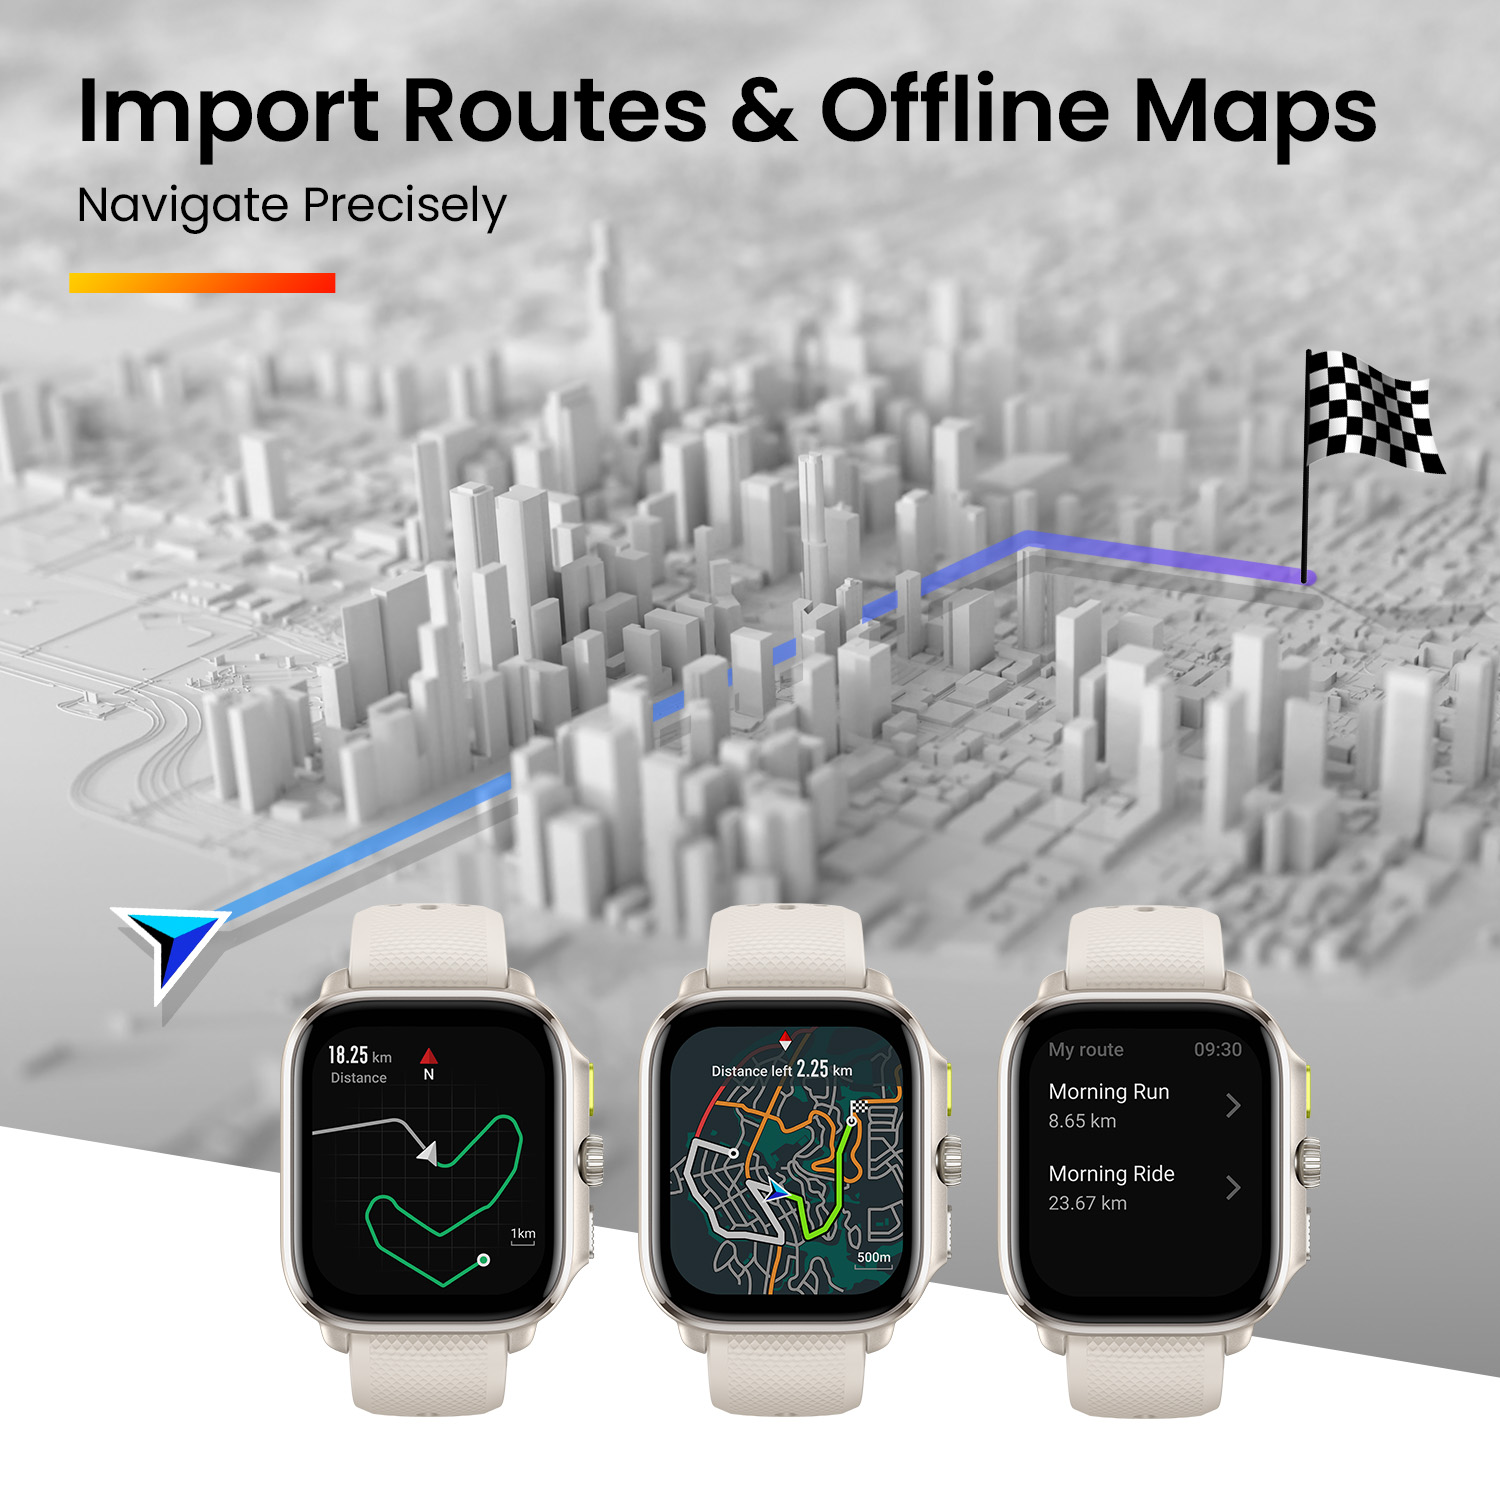 Đồng hồ thông minh Amazfit Cheetah Square - GPS băng tần kép - Bản đồ ngoại tuyến - Thiết kế mỏng nhẹ - BH 12 tháng - Hàng chính hãng